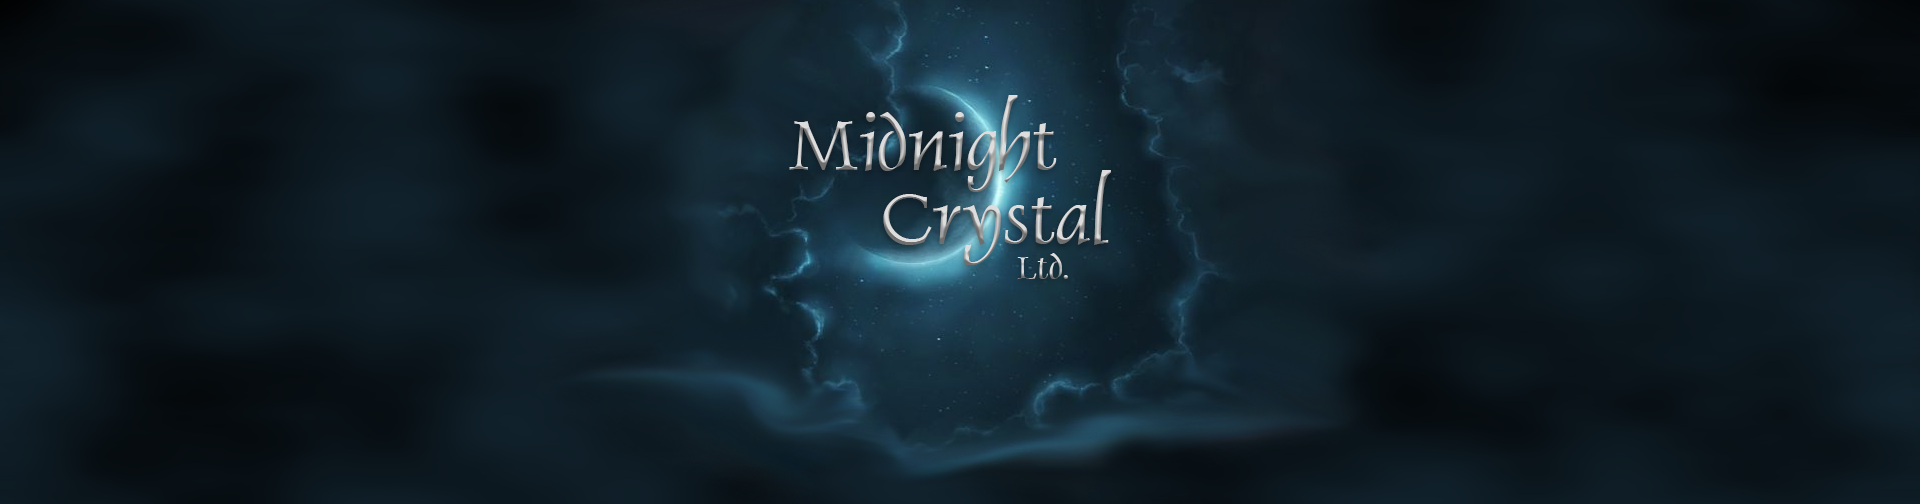 Midnight Crystal Ltd.